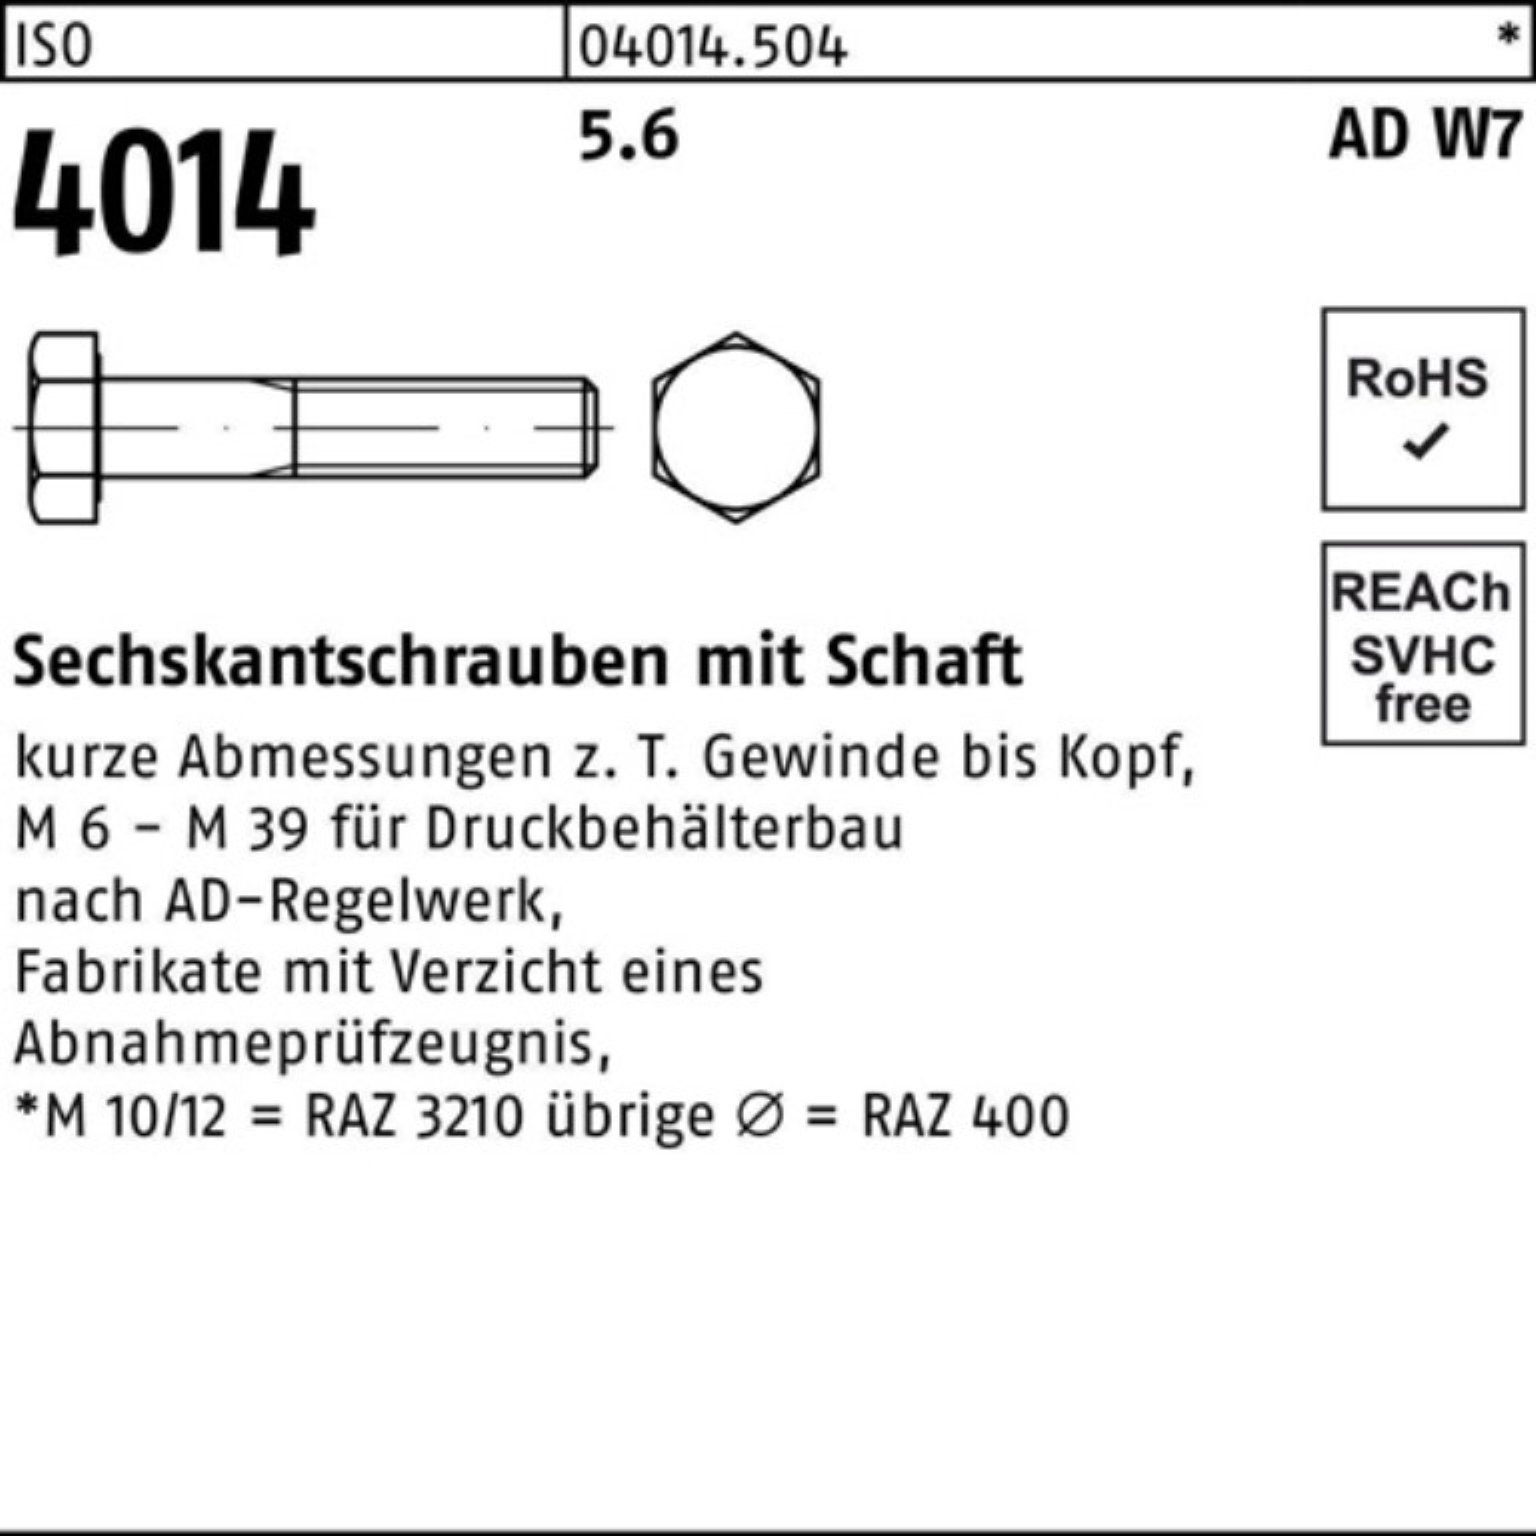 25 5.6 Bufab 100er 130 Stück M20x Schaft Sechskantschraube W7 ISO 4014 Sechskantschraube Pack